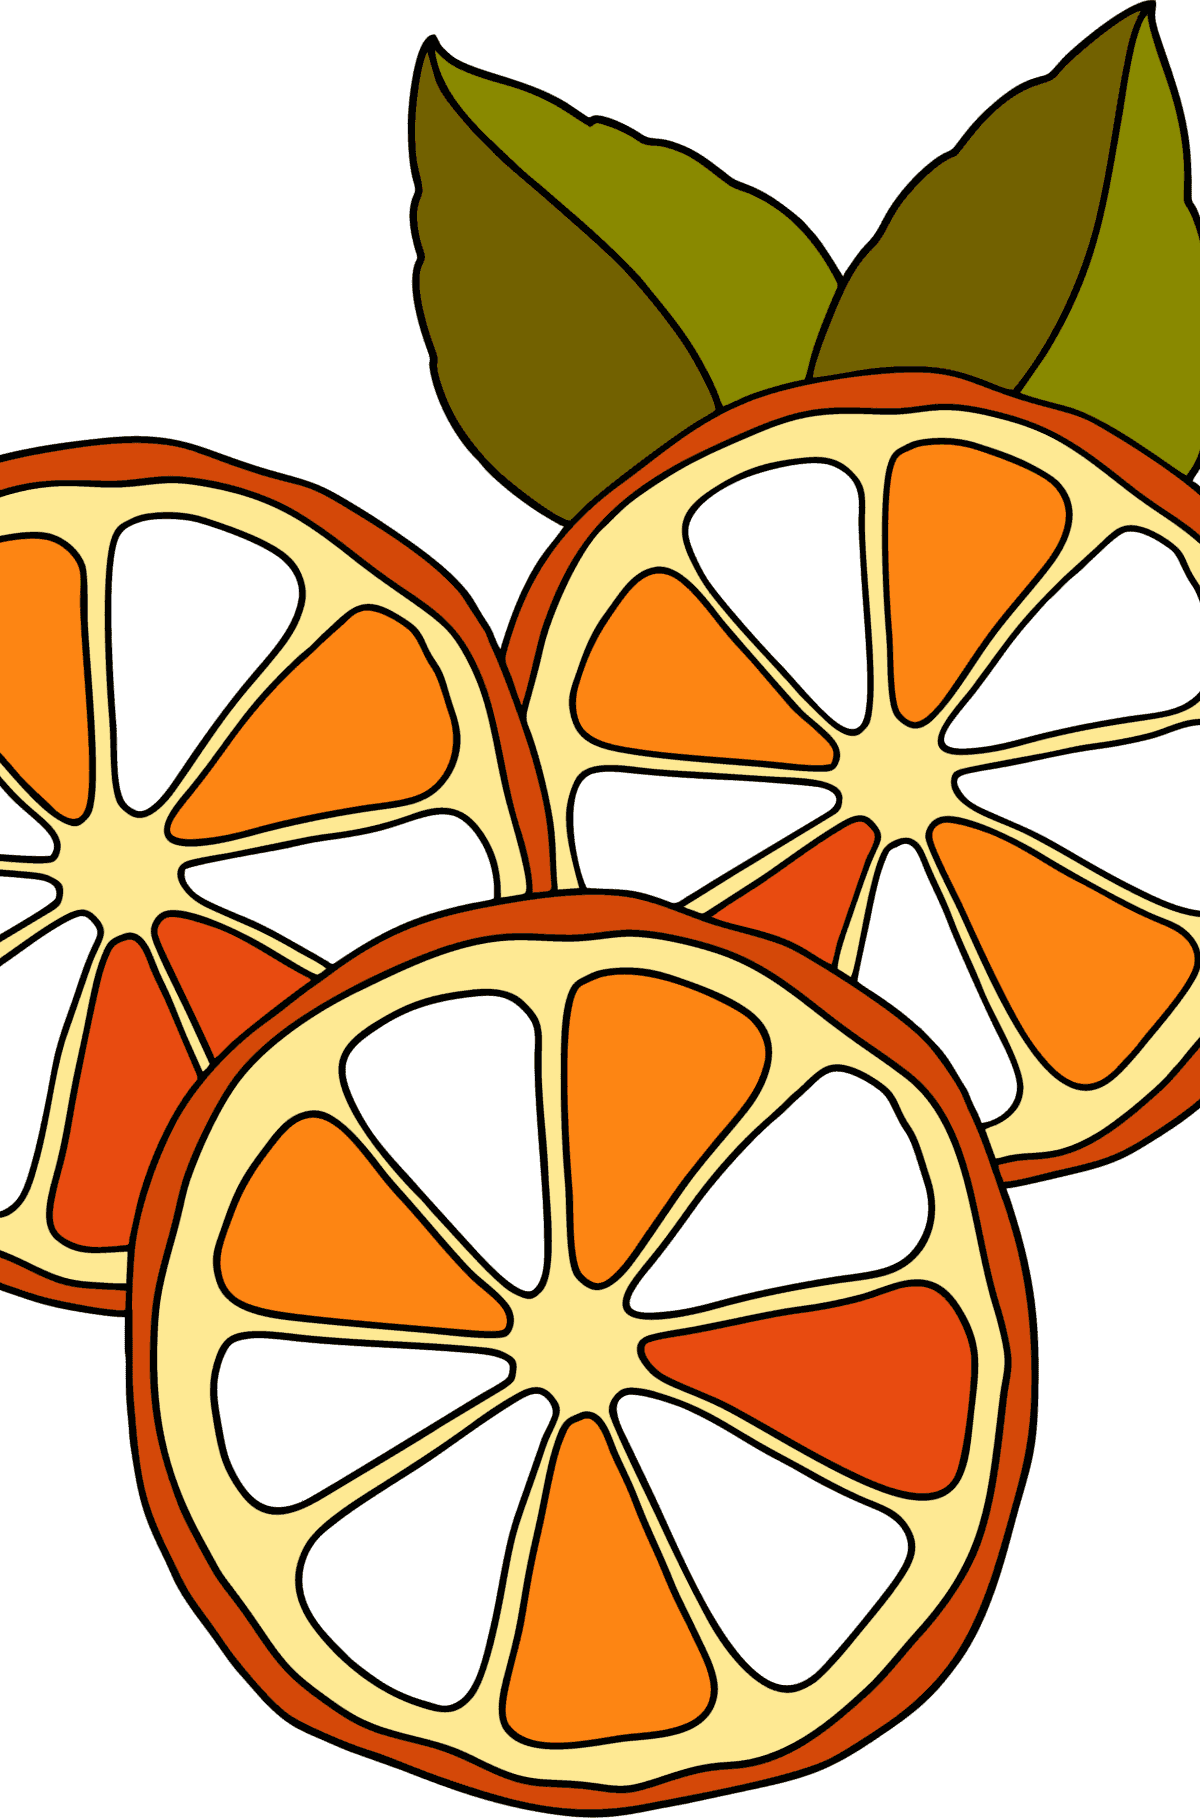 Раскраска Три апельсина - Картинки для Детей